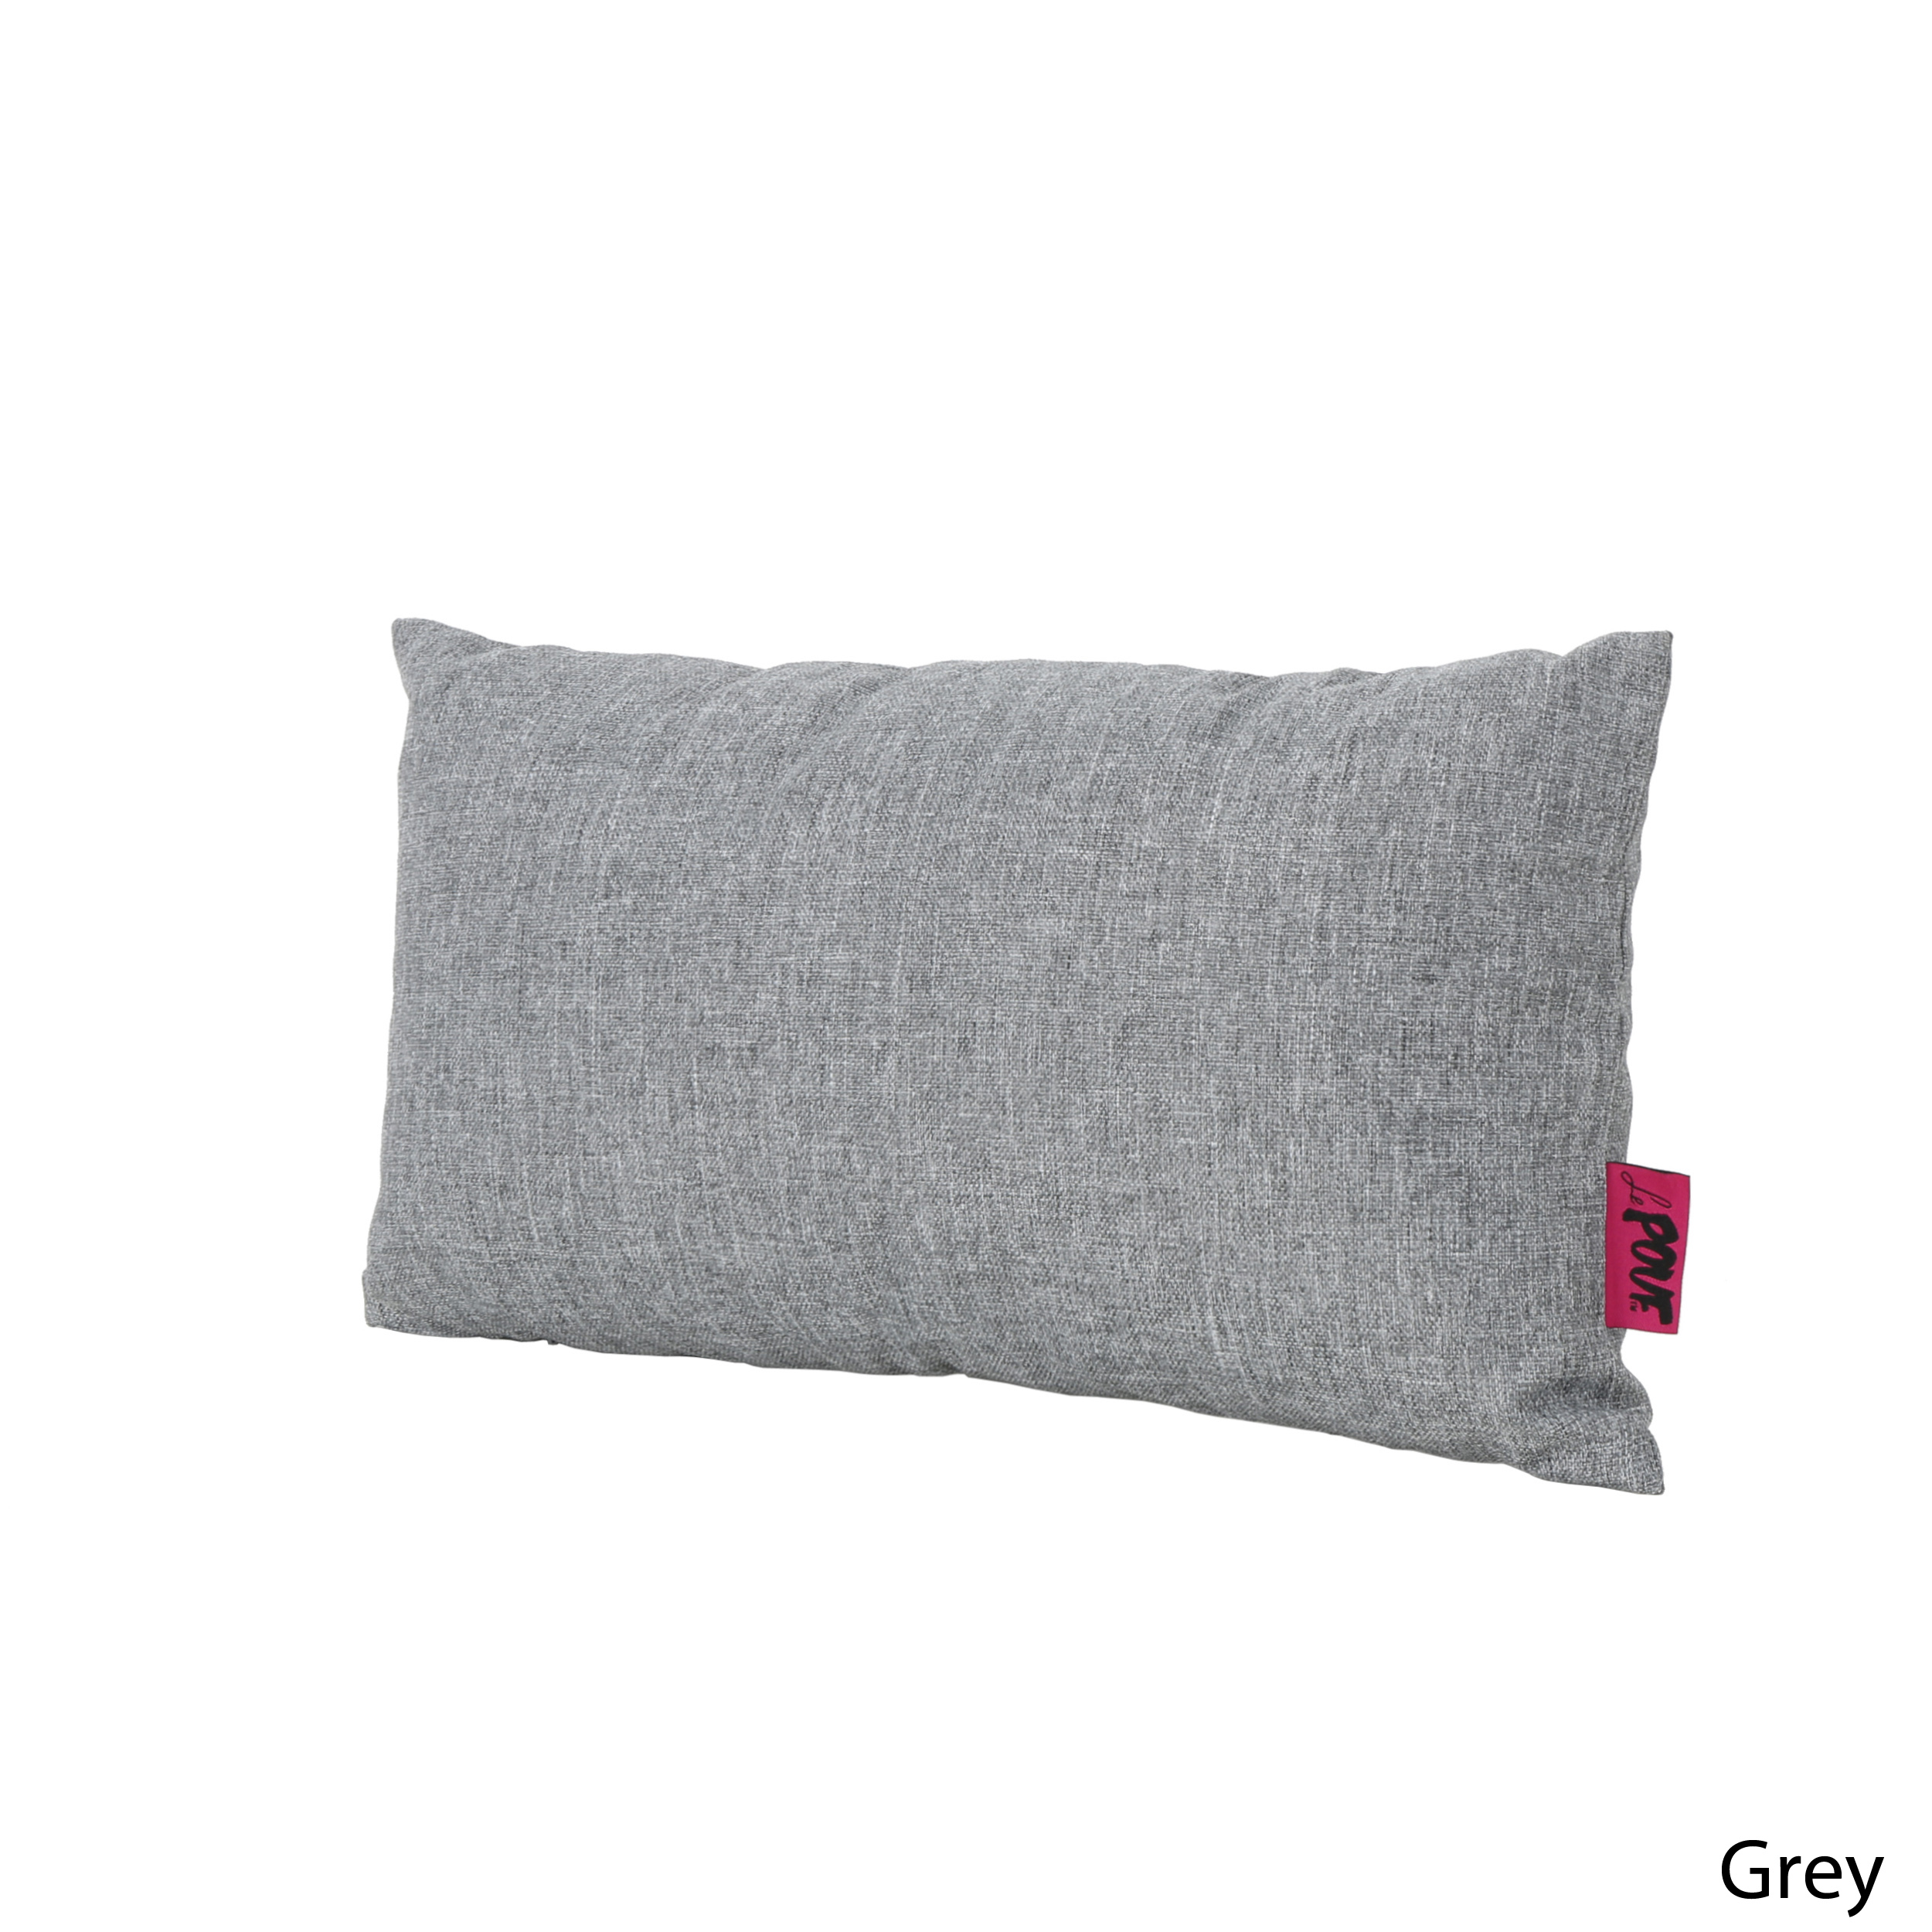 Noble House Coronado 18.5x11.5" Outdoor Fabric Throw Pillow in Gray - image 2 of 11